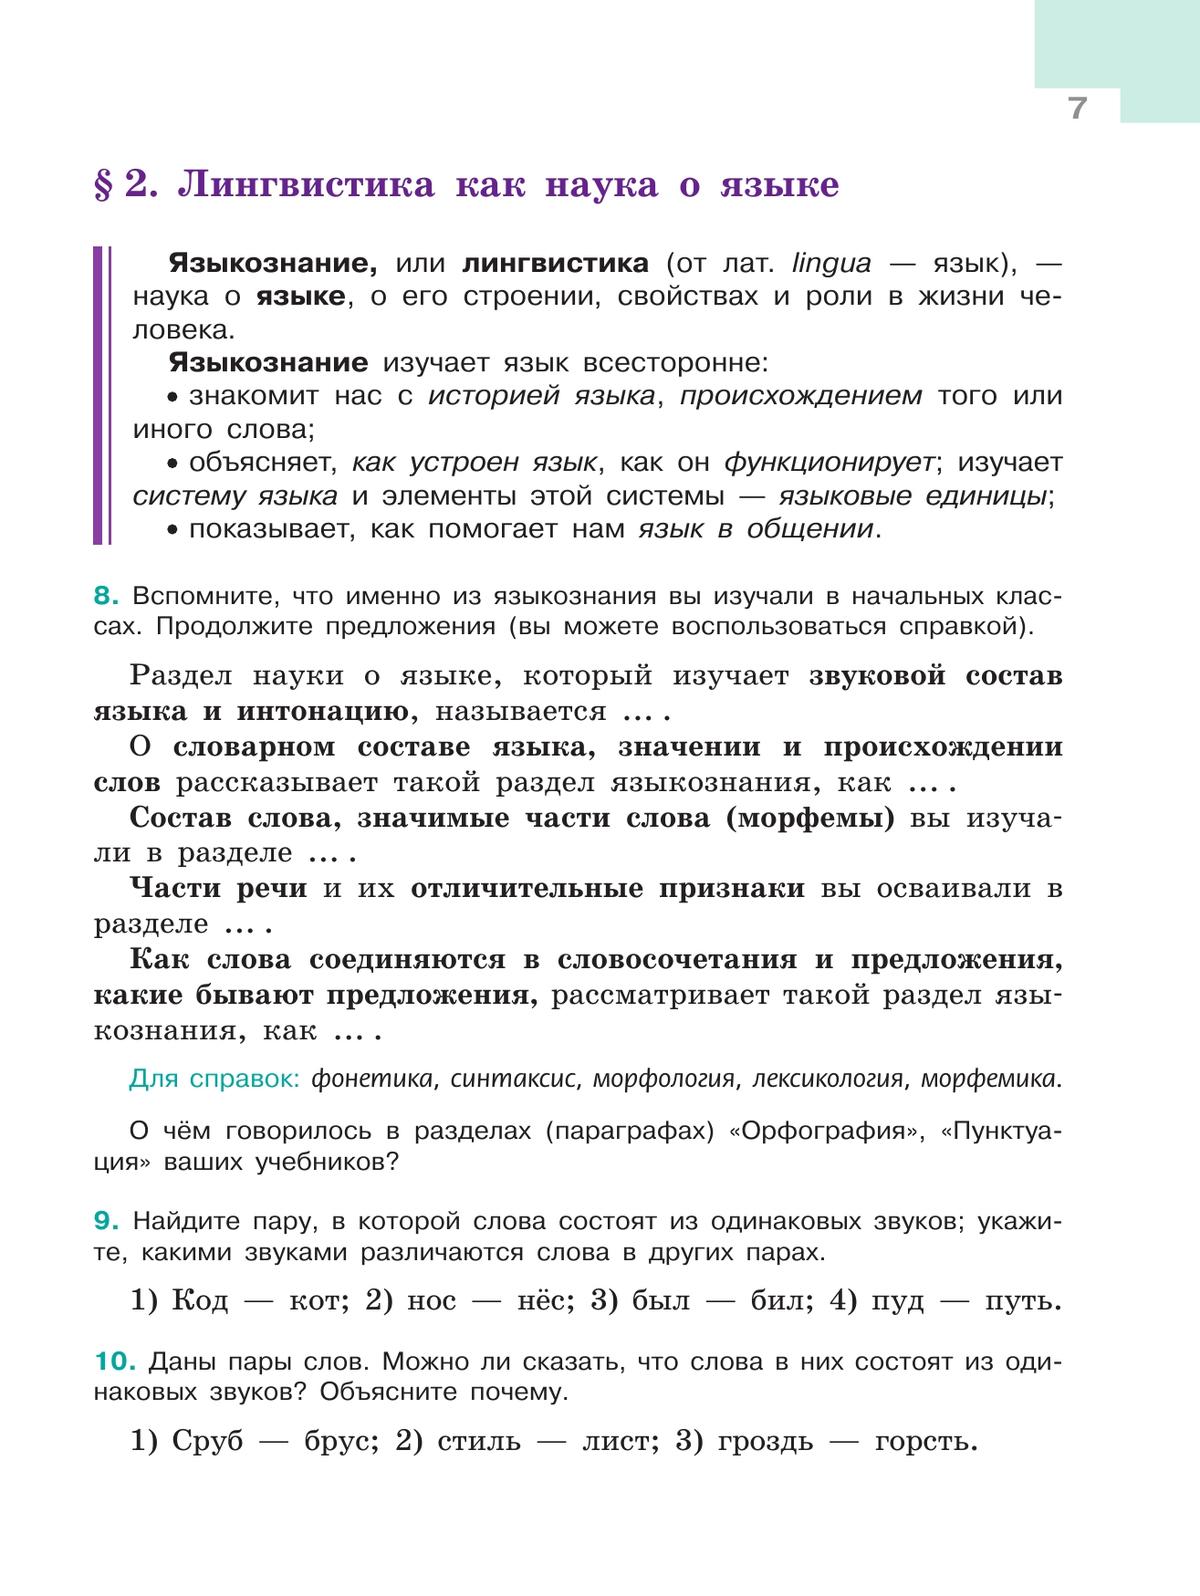 Русский язык. 5 класс. Учебник. В 2-х ч. Ч. 1 5